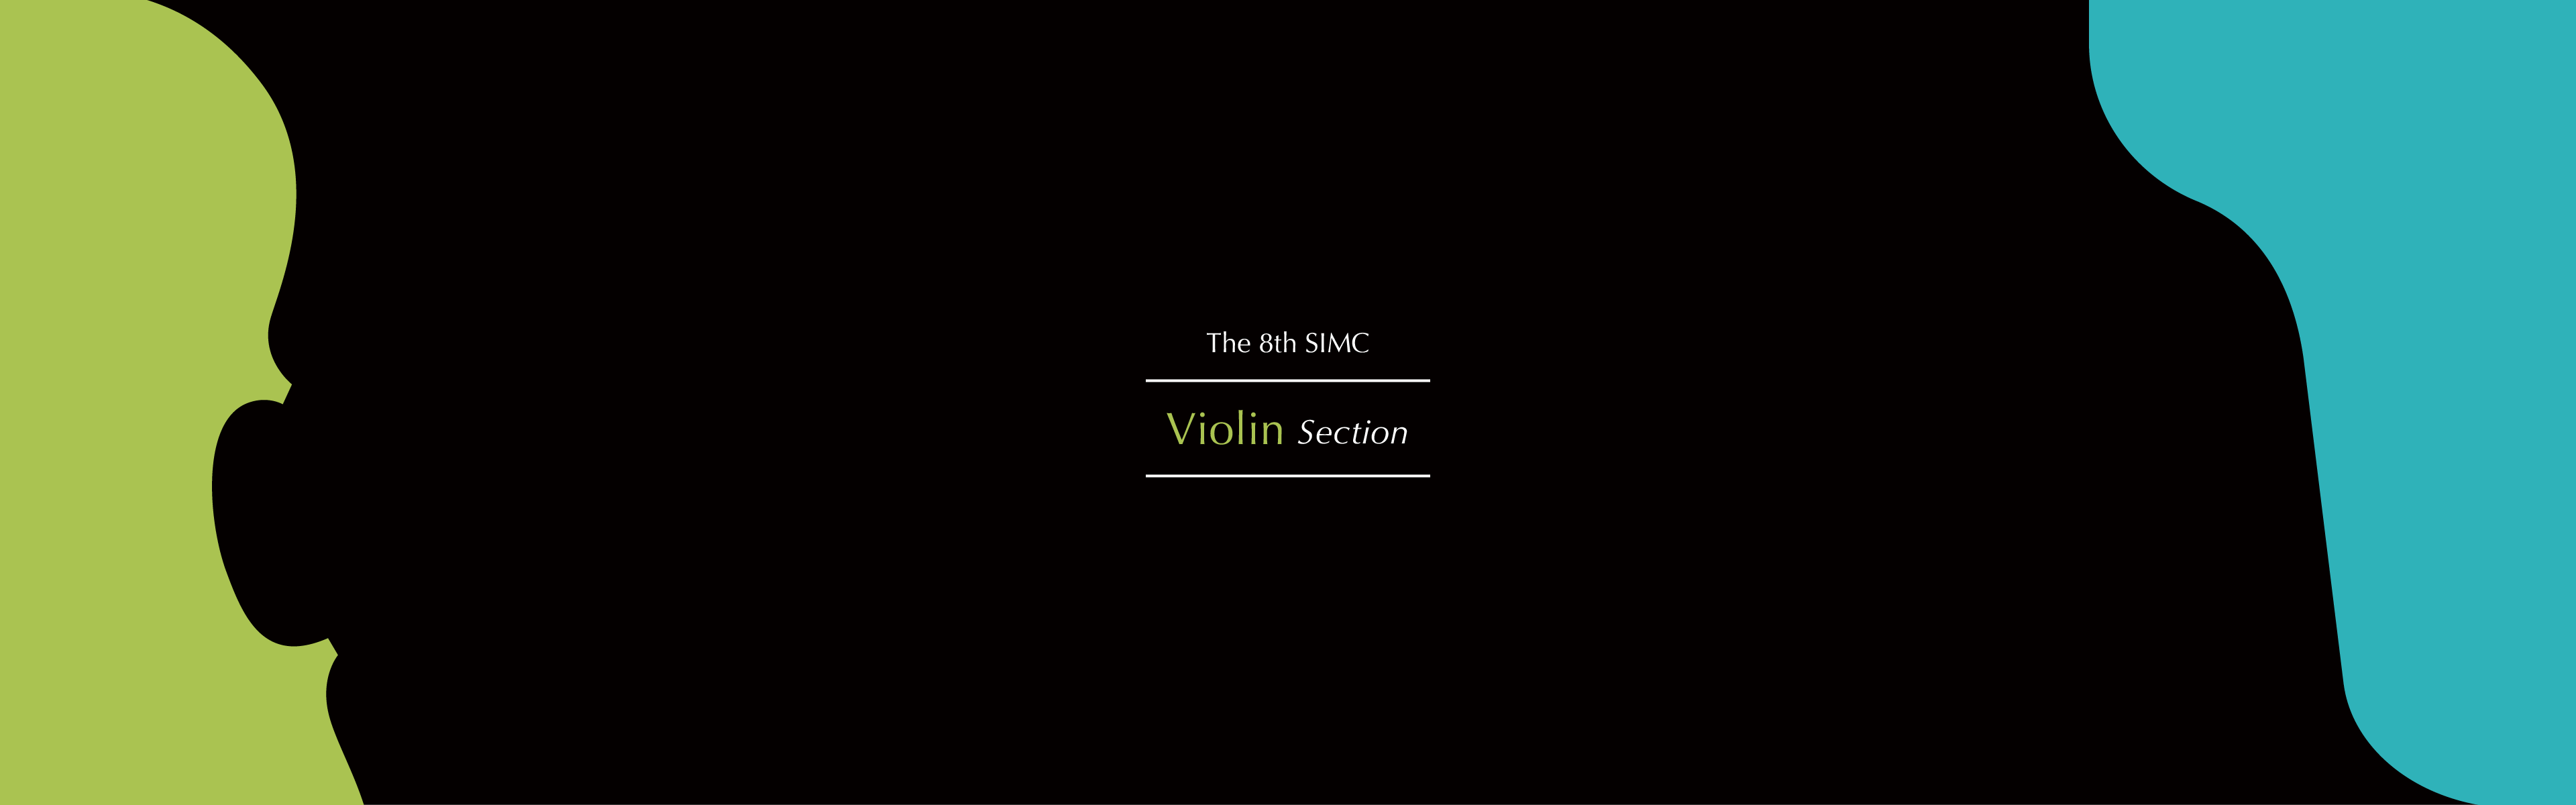 ヴァイオリン部門 審査委員 | 仙台国際音楽コンクール公式サイト